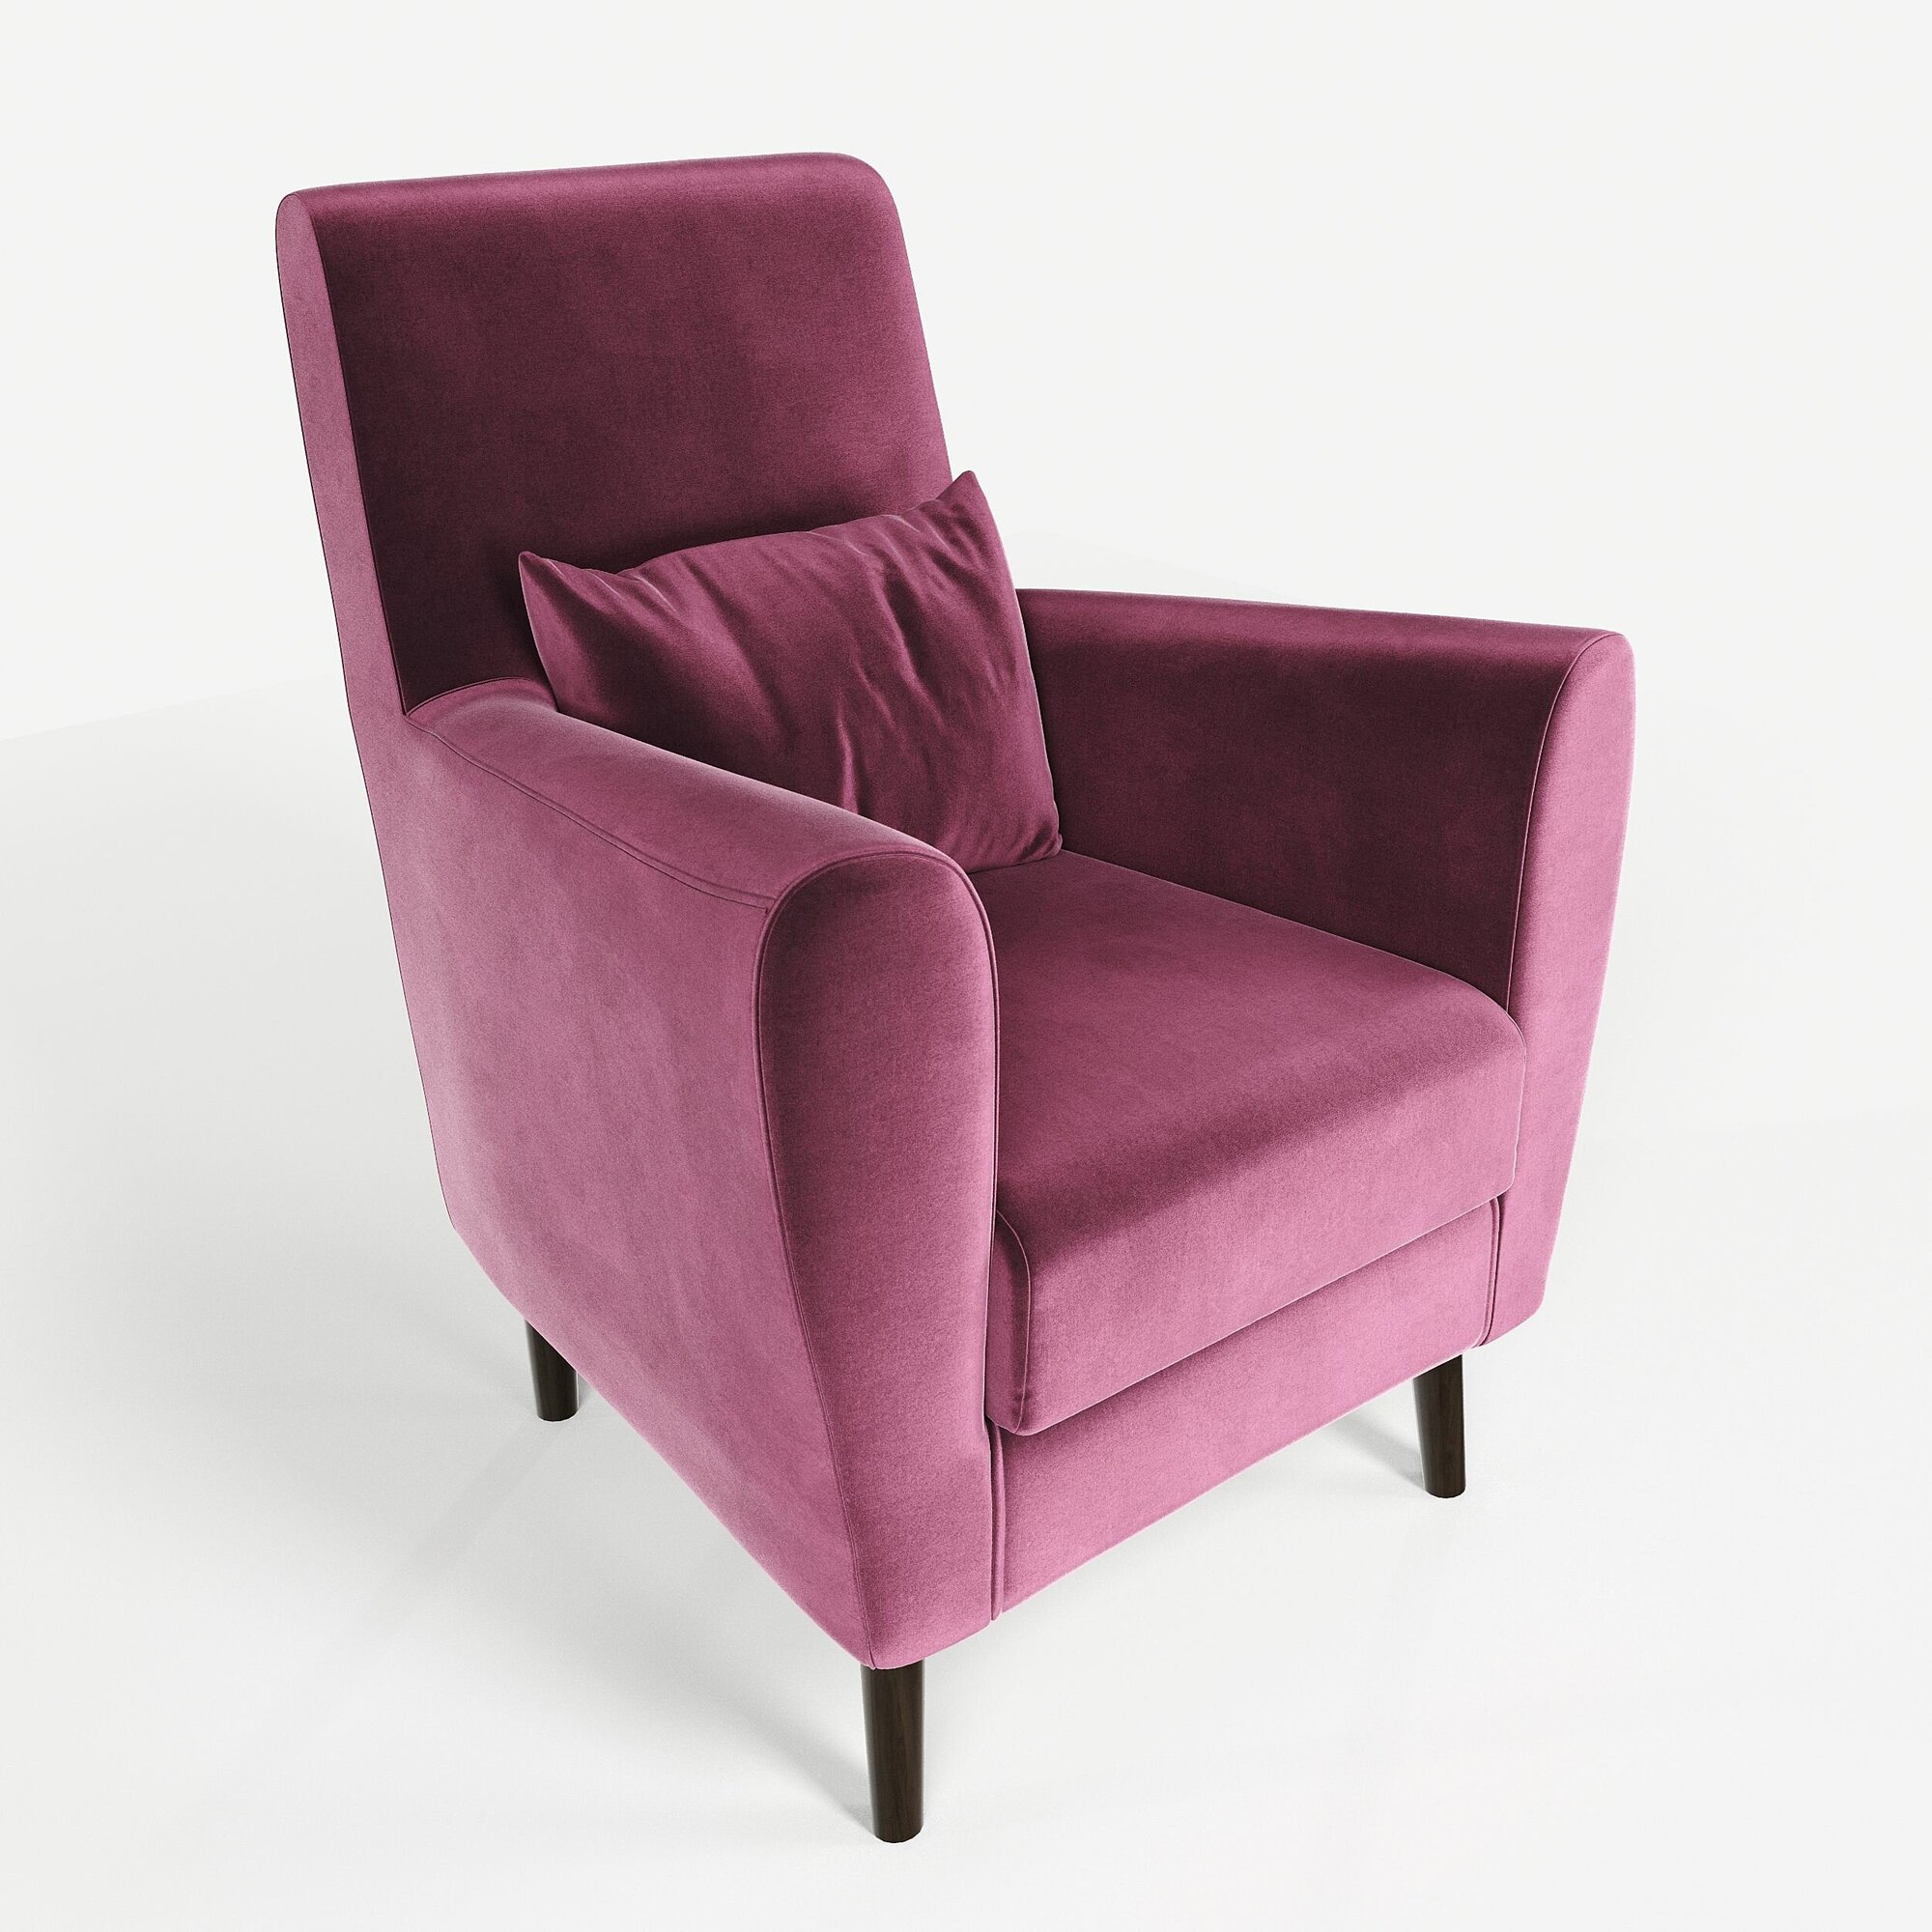 Кресло мягкое Грэйс Z-10 (ярко-розовый) на высоких ножках с подлокотниками в гостиную, офис, зону ожидания, салон красоты.